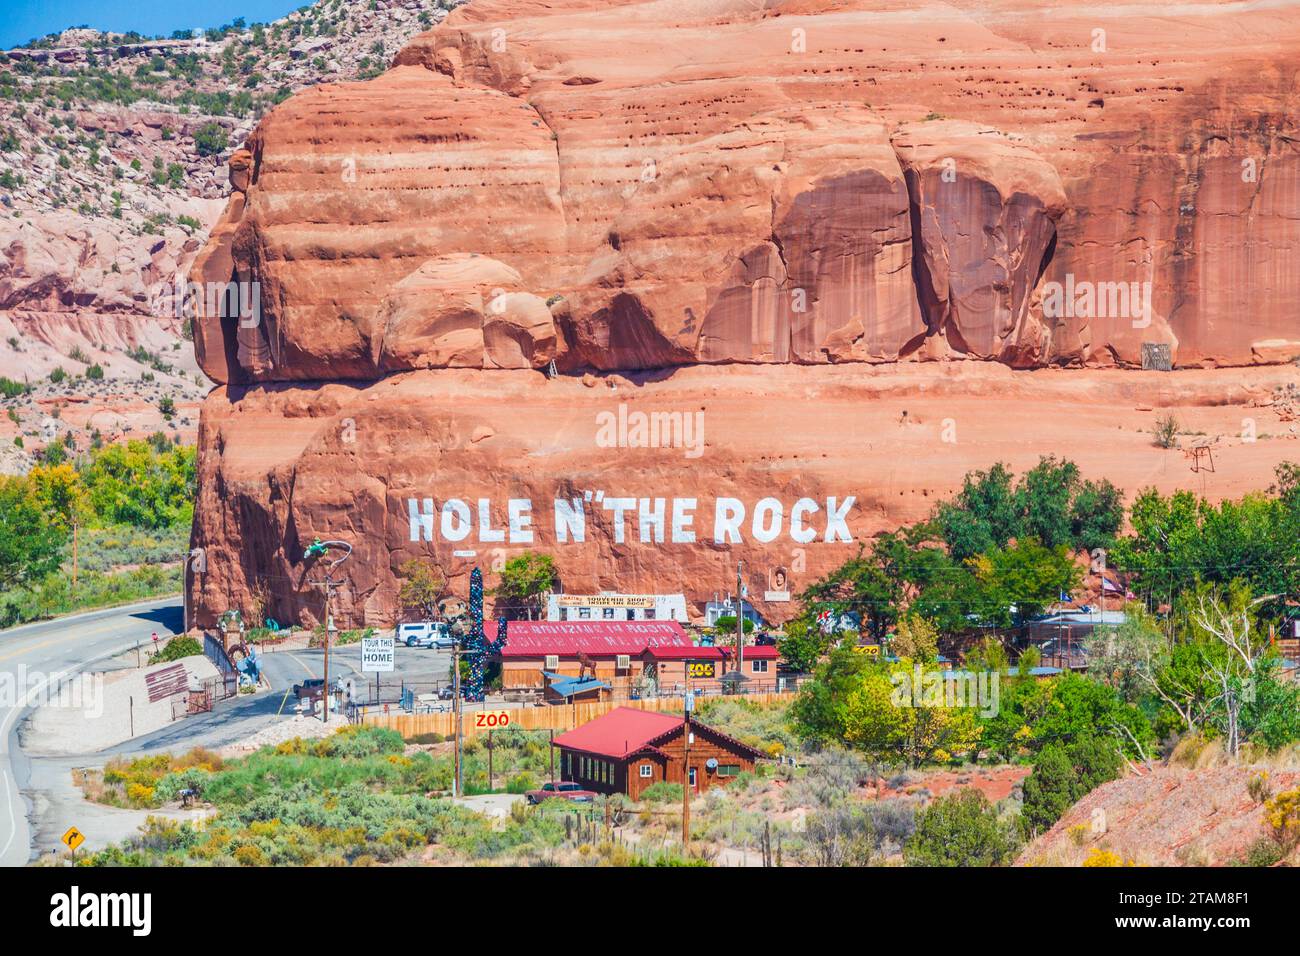 La route panoramique US 191 juste au sud de Moab, Utah, est connue pour ses formations rocheuses de grès. Hole in the Rock est une maison des plus uniques, sculptée dans la roche. Banque D'Images